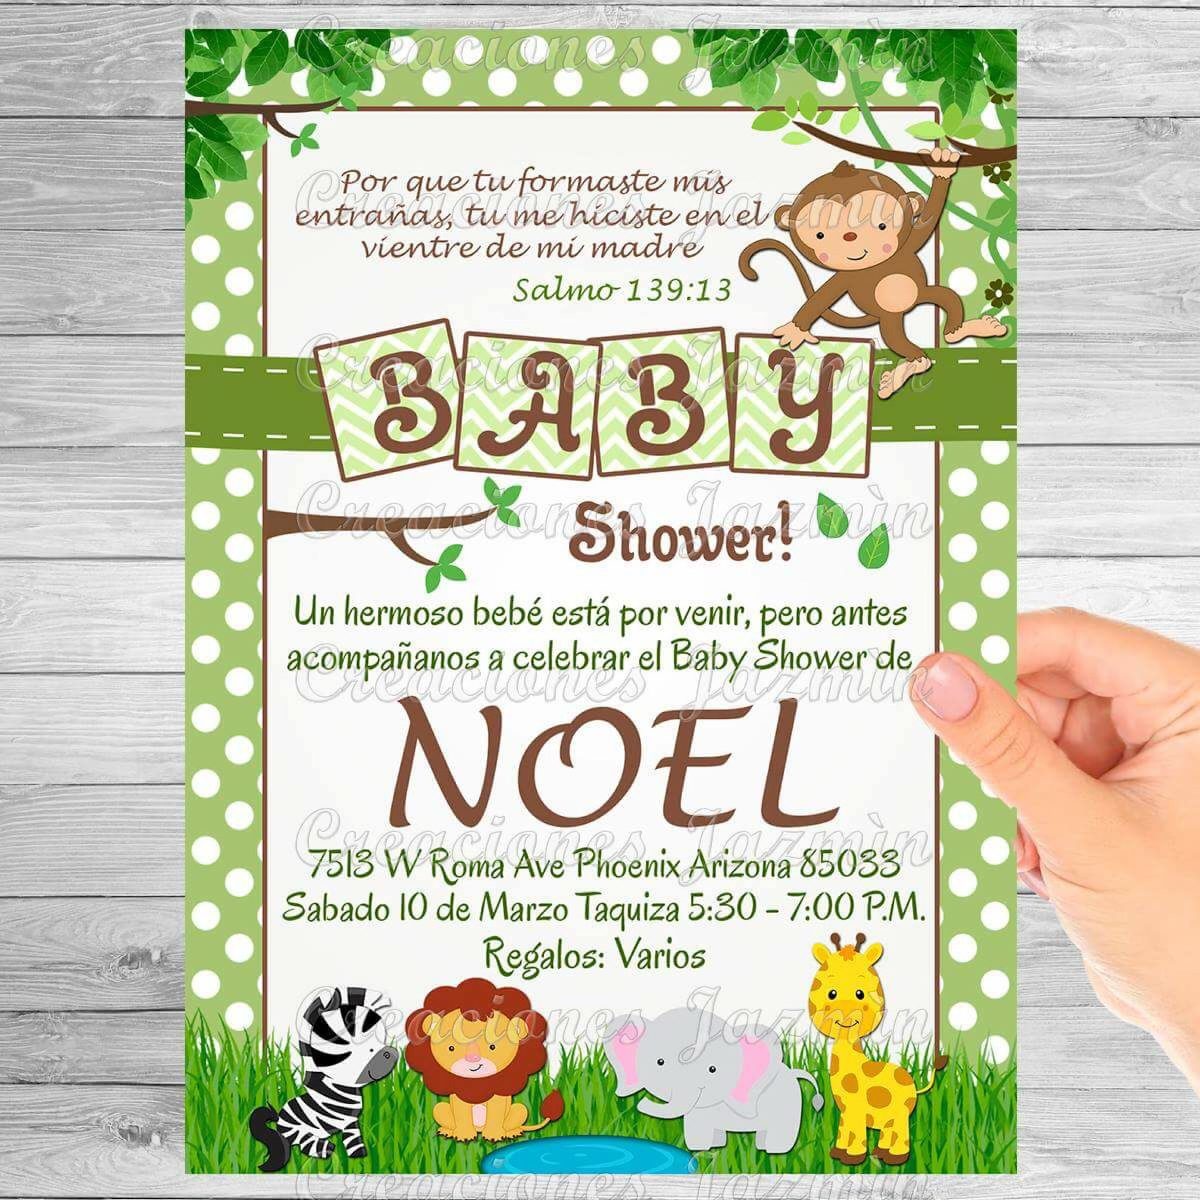 Invitación Digital Osito Baby Shower 5900 En Mercado Libre A45